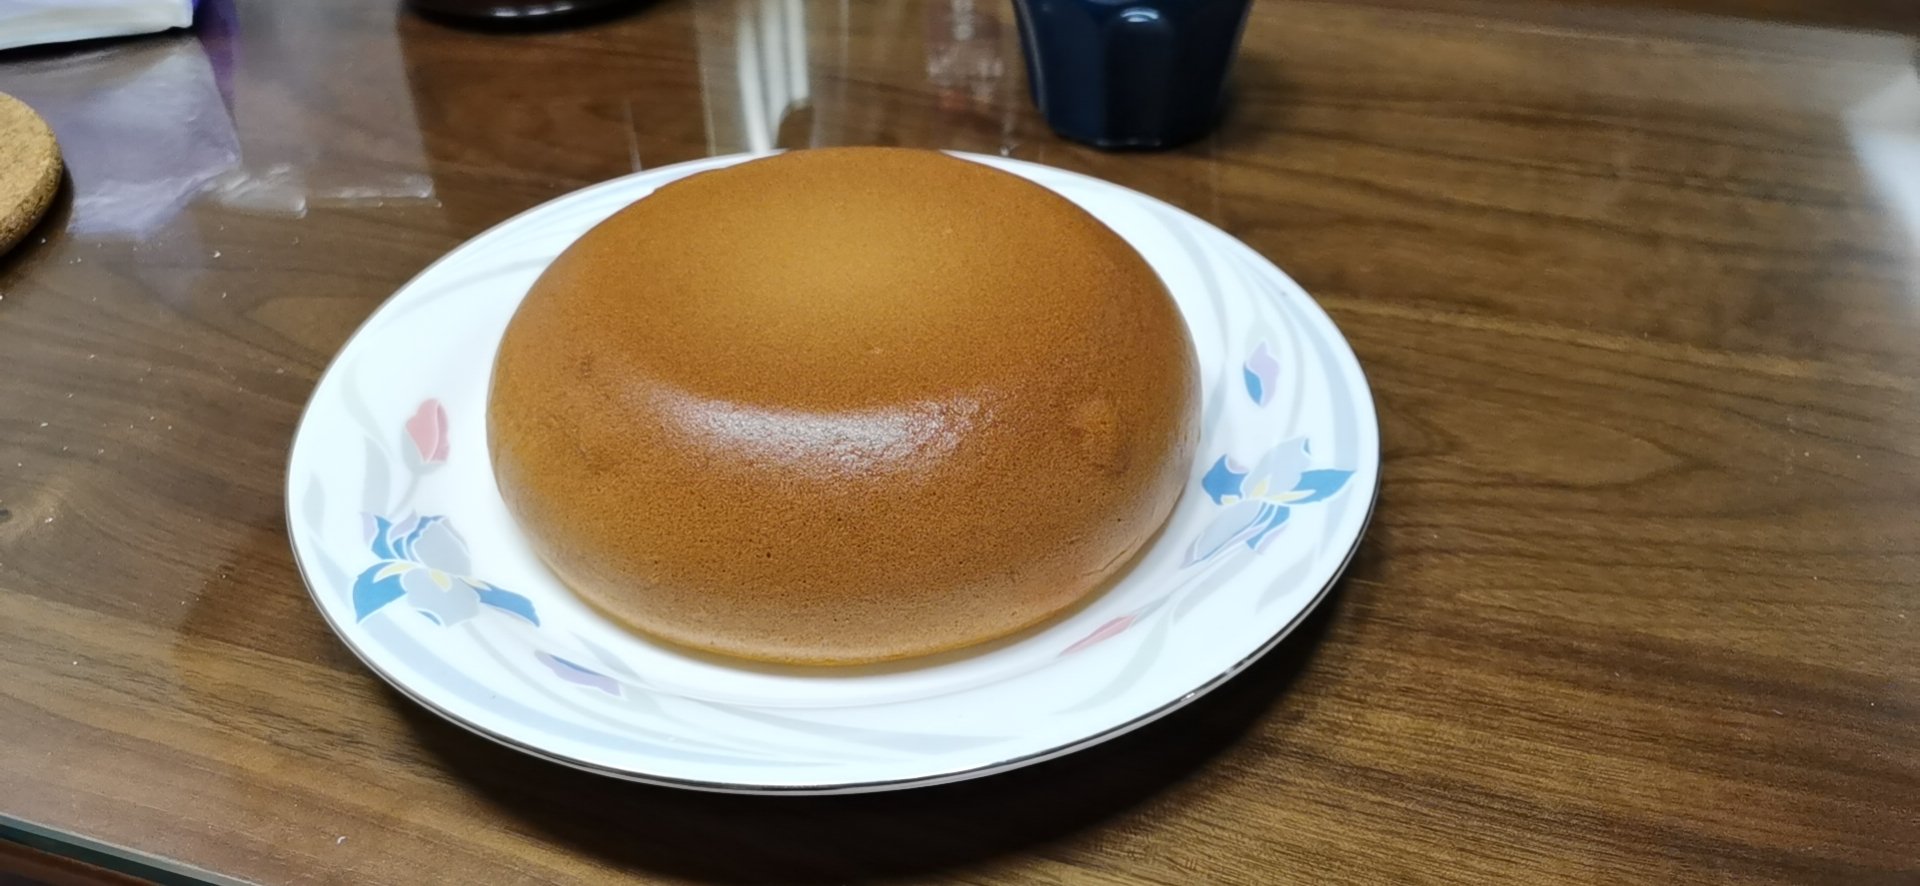 电饭锅版蒸蛋糕